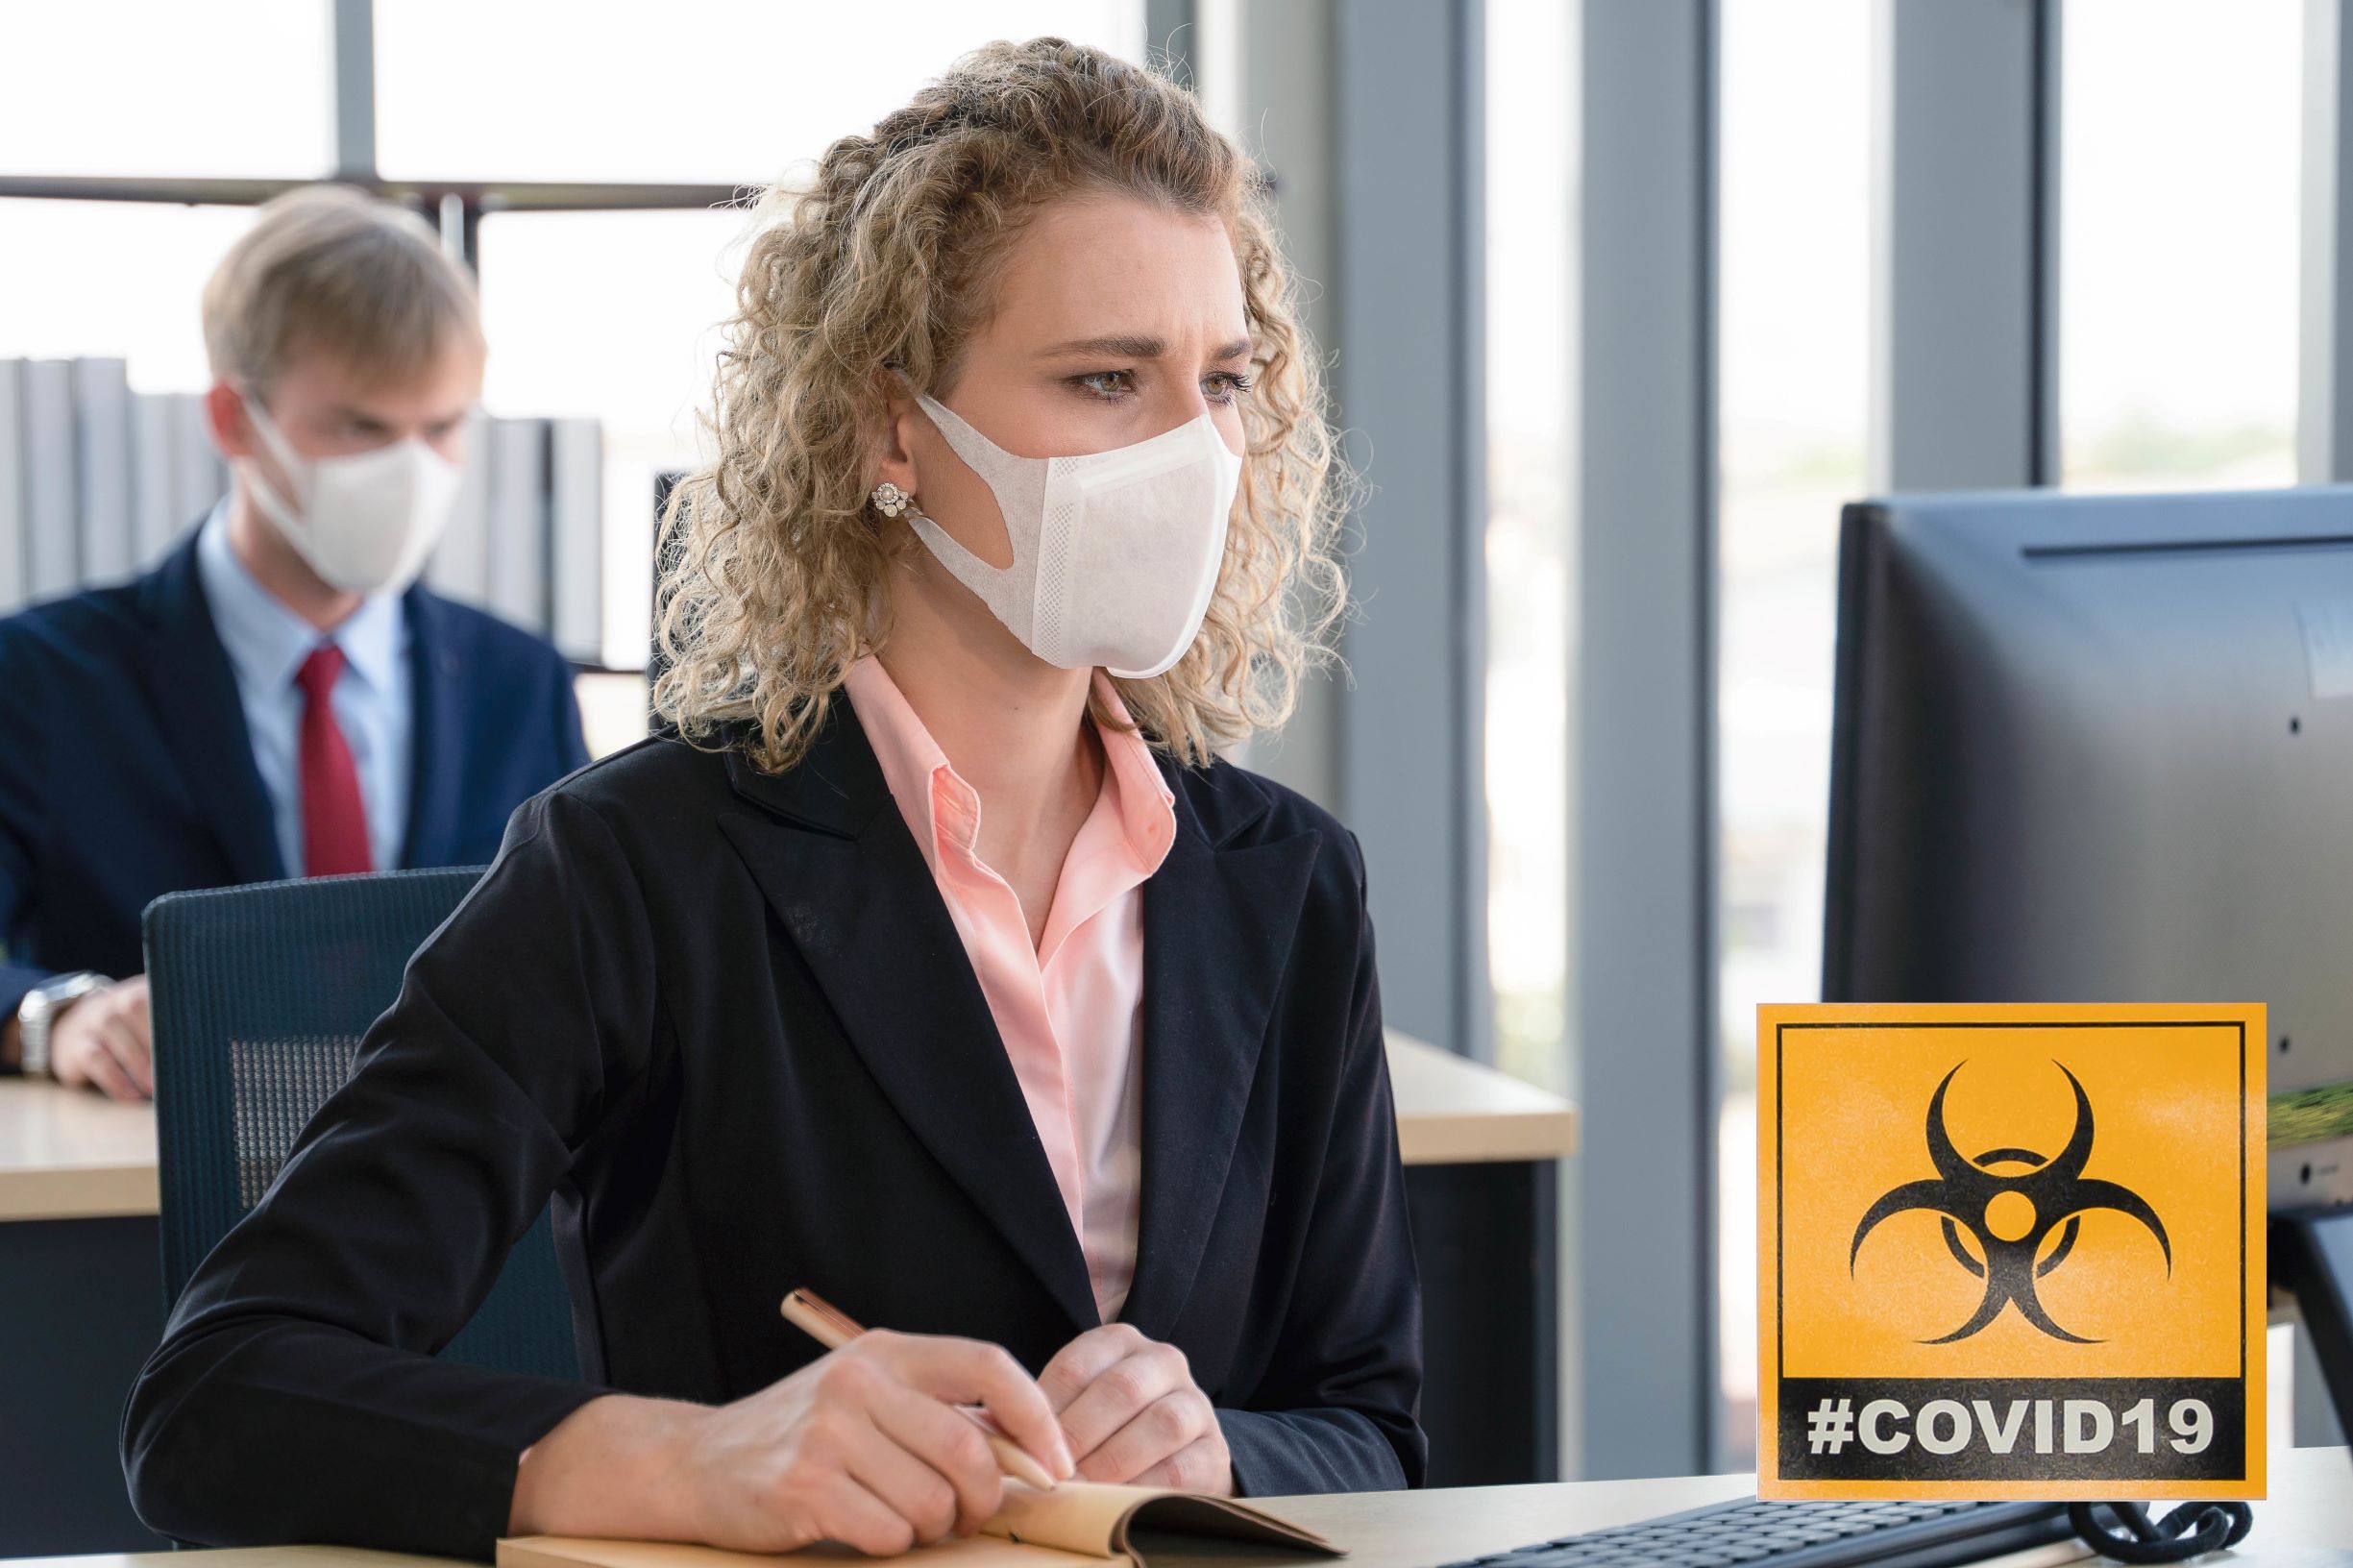 Contenimento del virus Covid-19 negli ambienti di lavoro